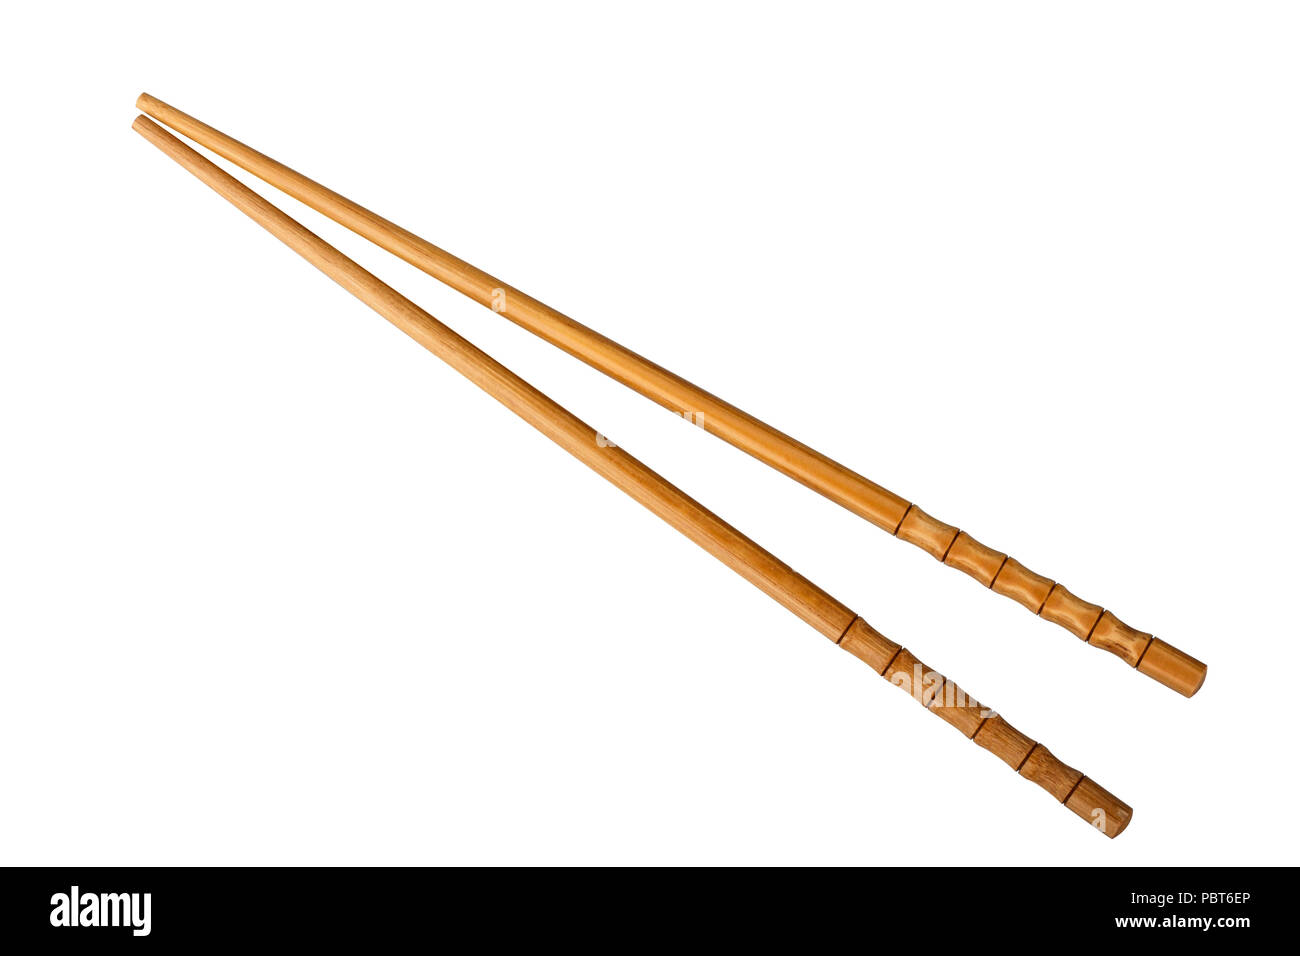 Bamboo chopsticks isolated on white background Stock Photo